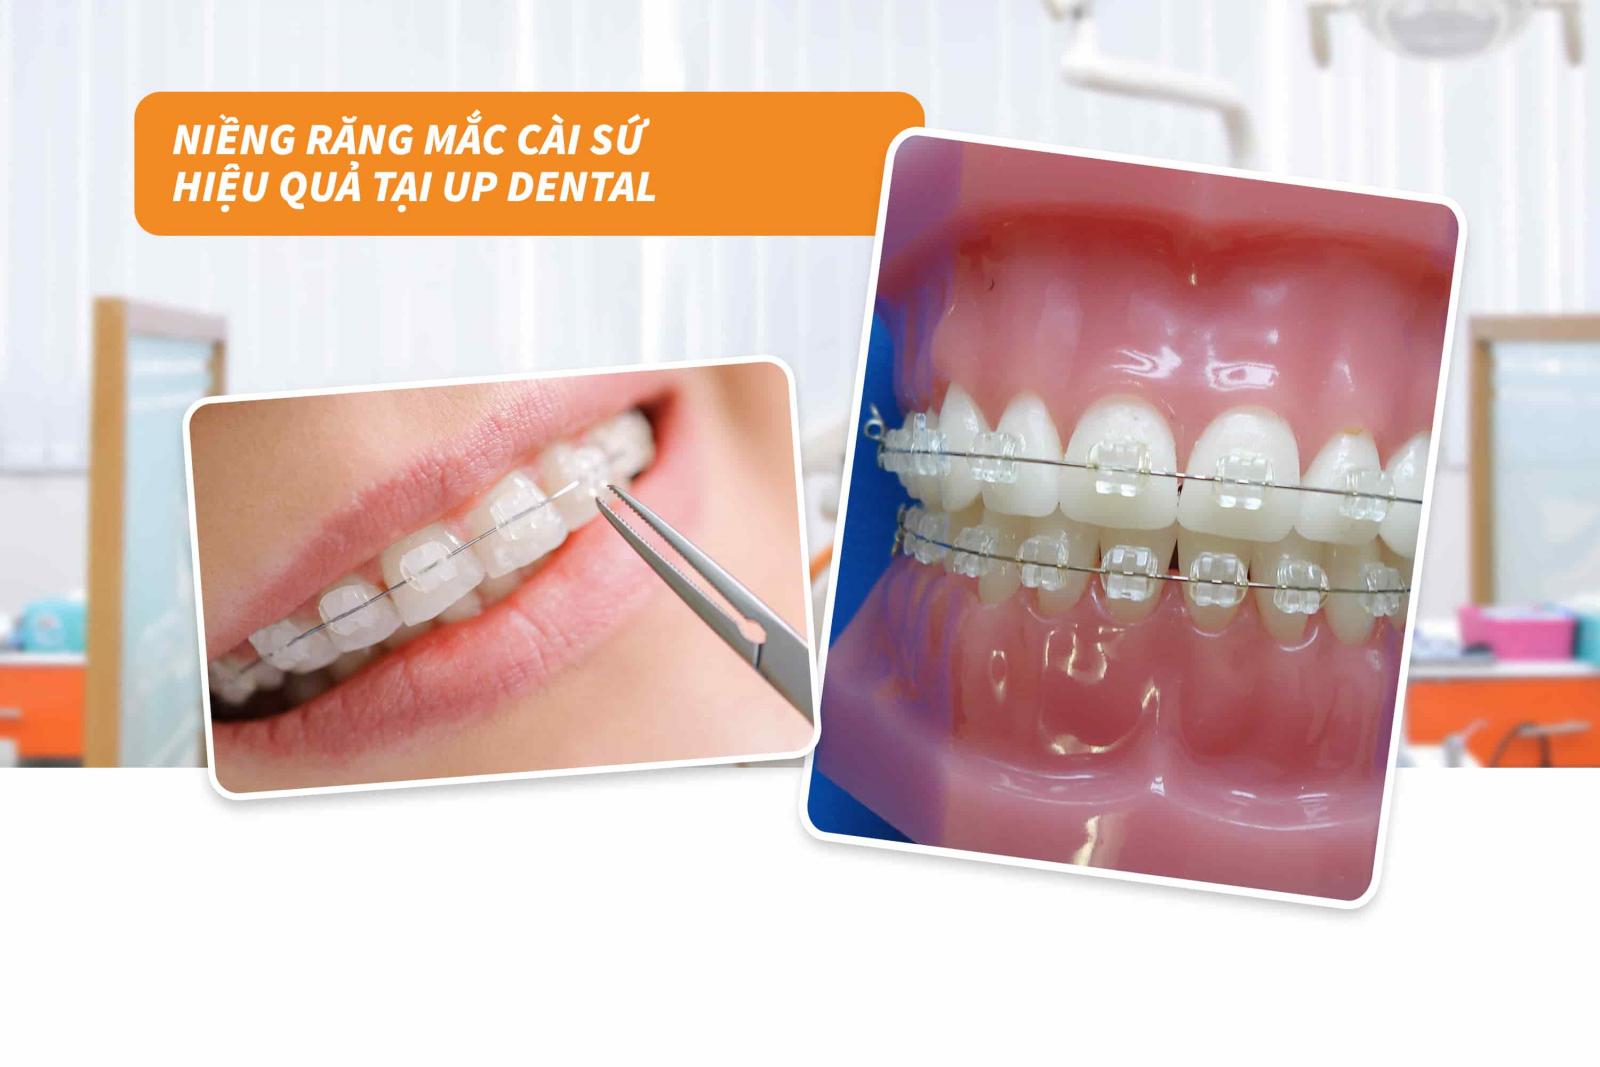 Niềng răng mắc cài sứ hiệu quả tại Up Dental